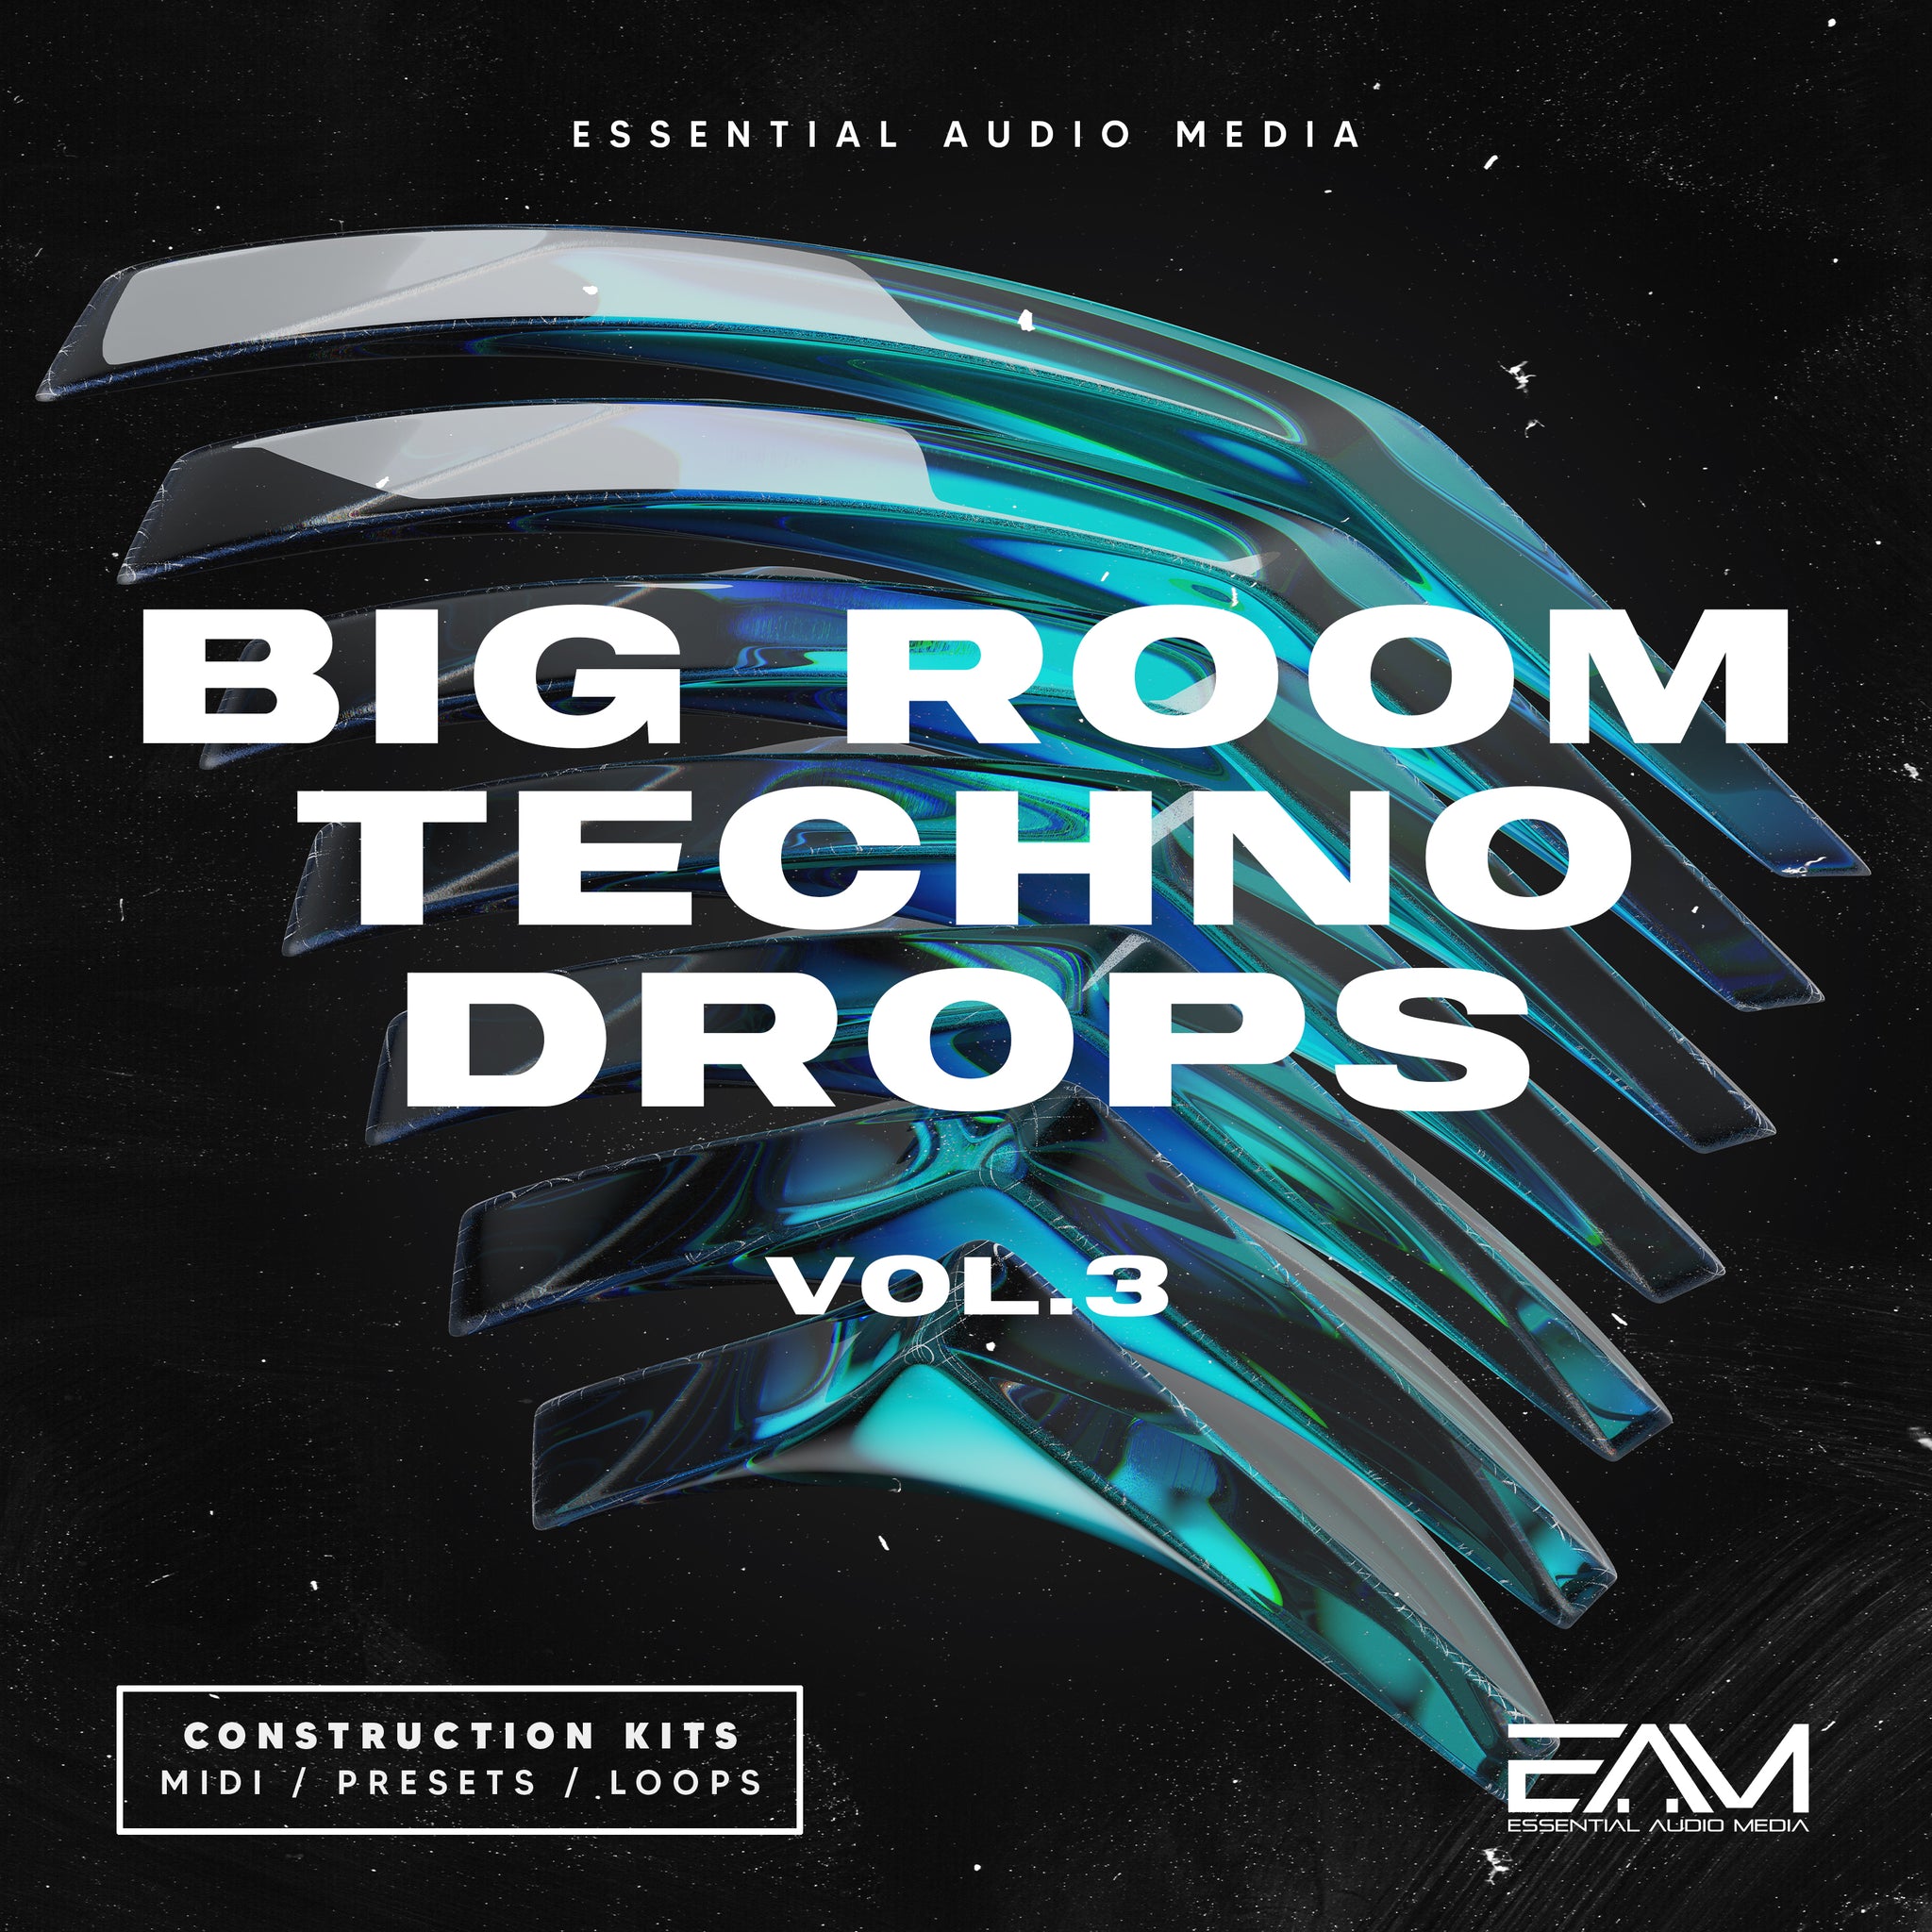 Big Room Techno Drops Vol.3